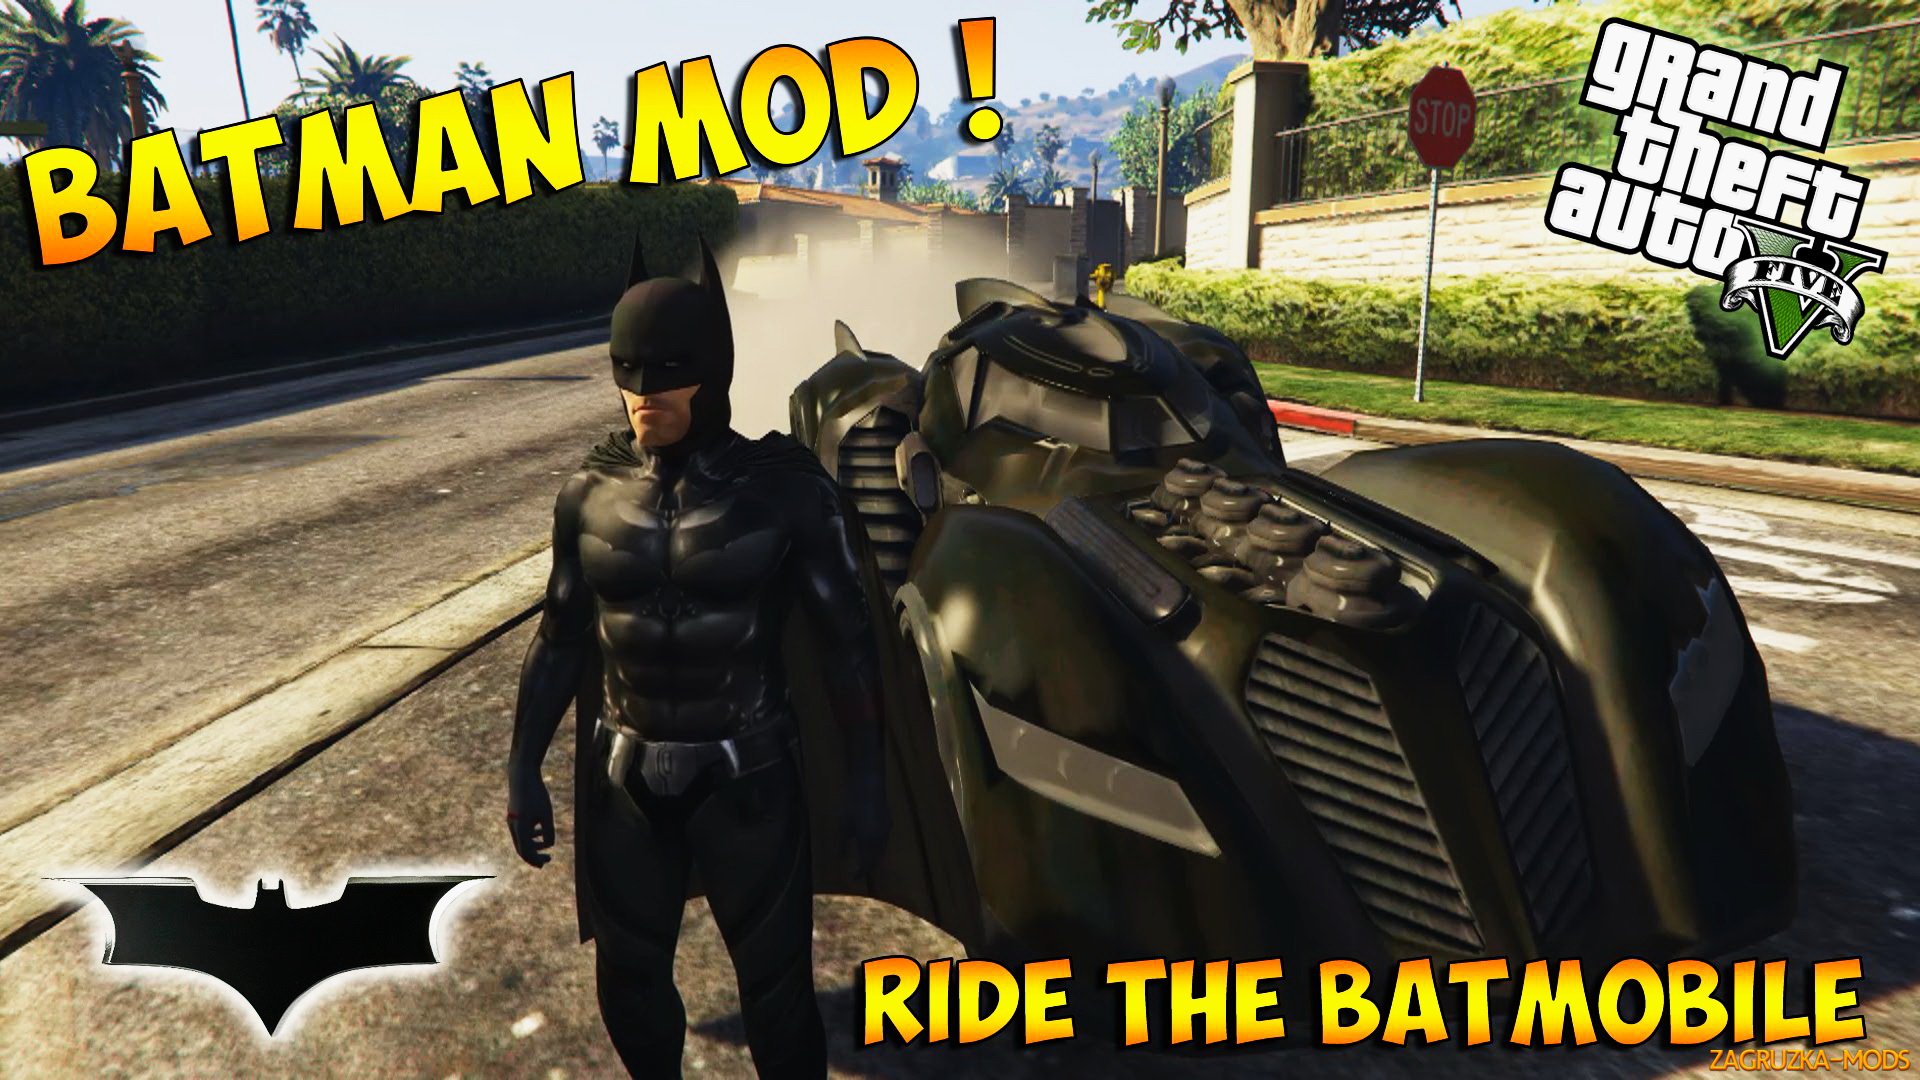 Project Batman Mod v1.9 (Alpha Version) for GTA 5